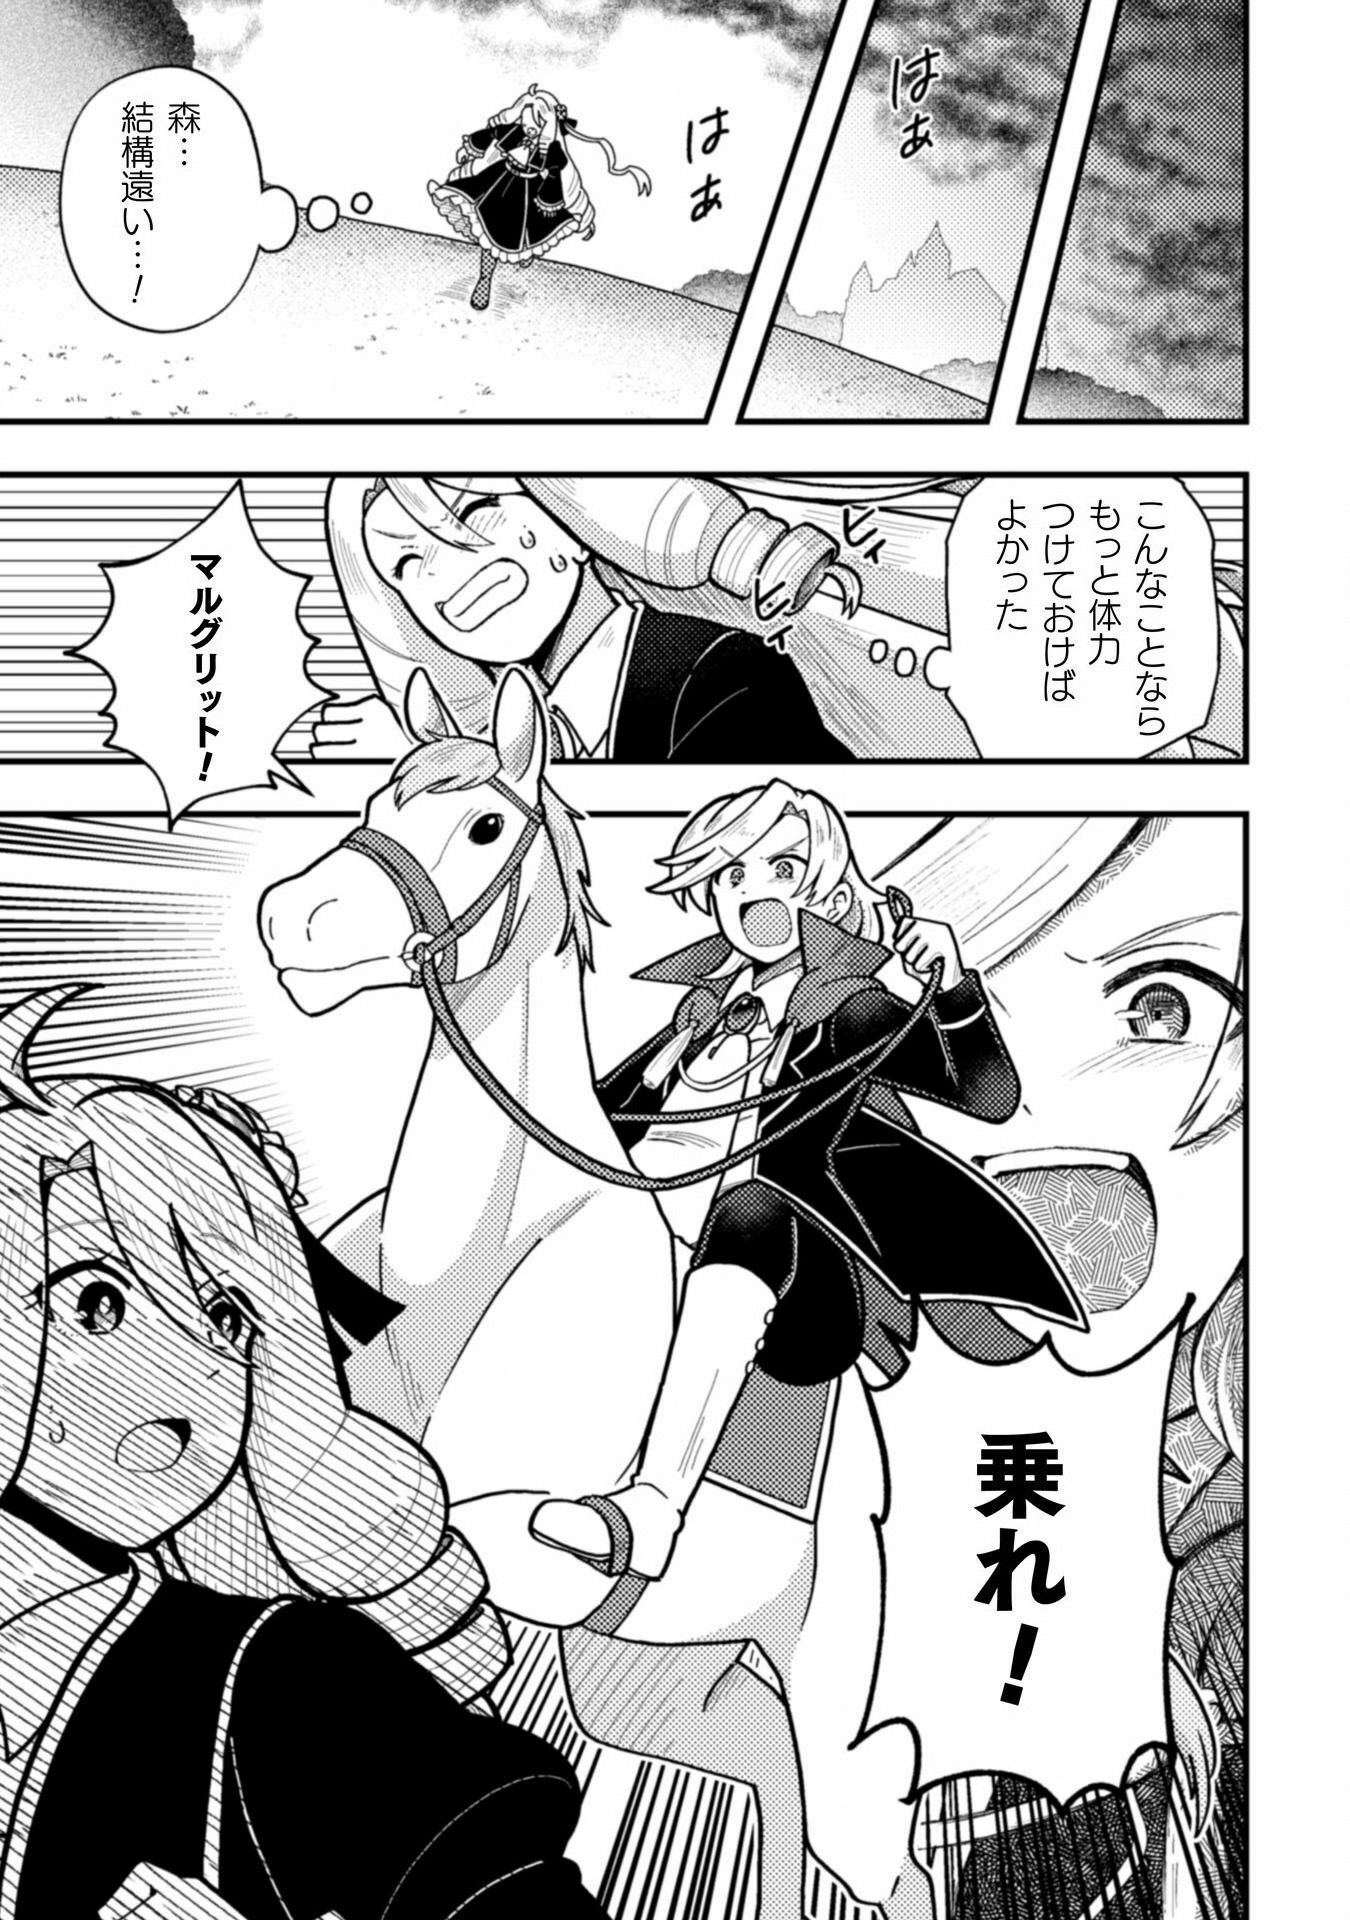 Otome Game no Akuyaku Reijou ni Tensei shitakedo Follower ga Fukyoushiteta Chisiki shikanai - Chapter 22 - Page 17